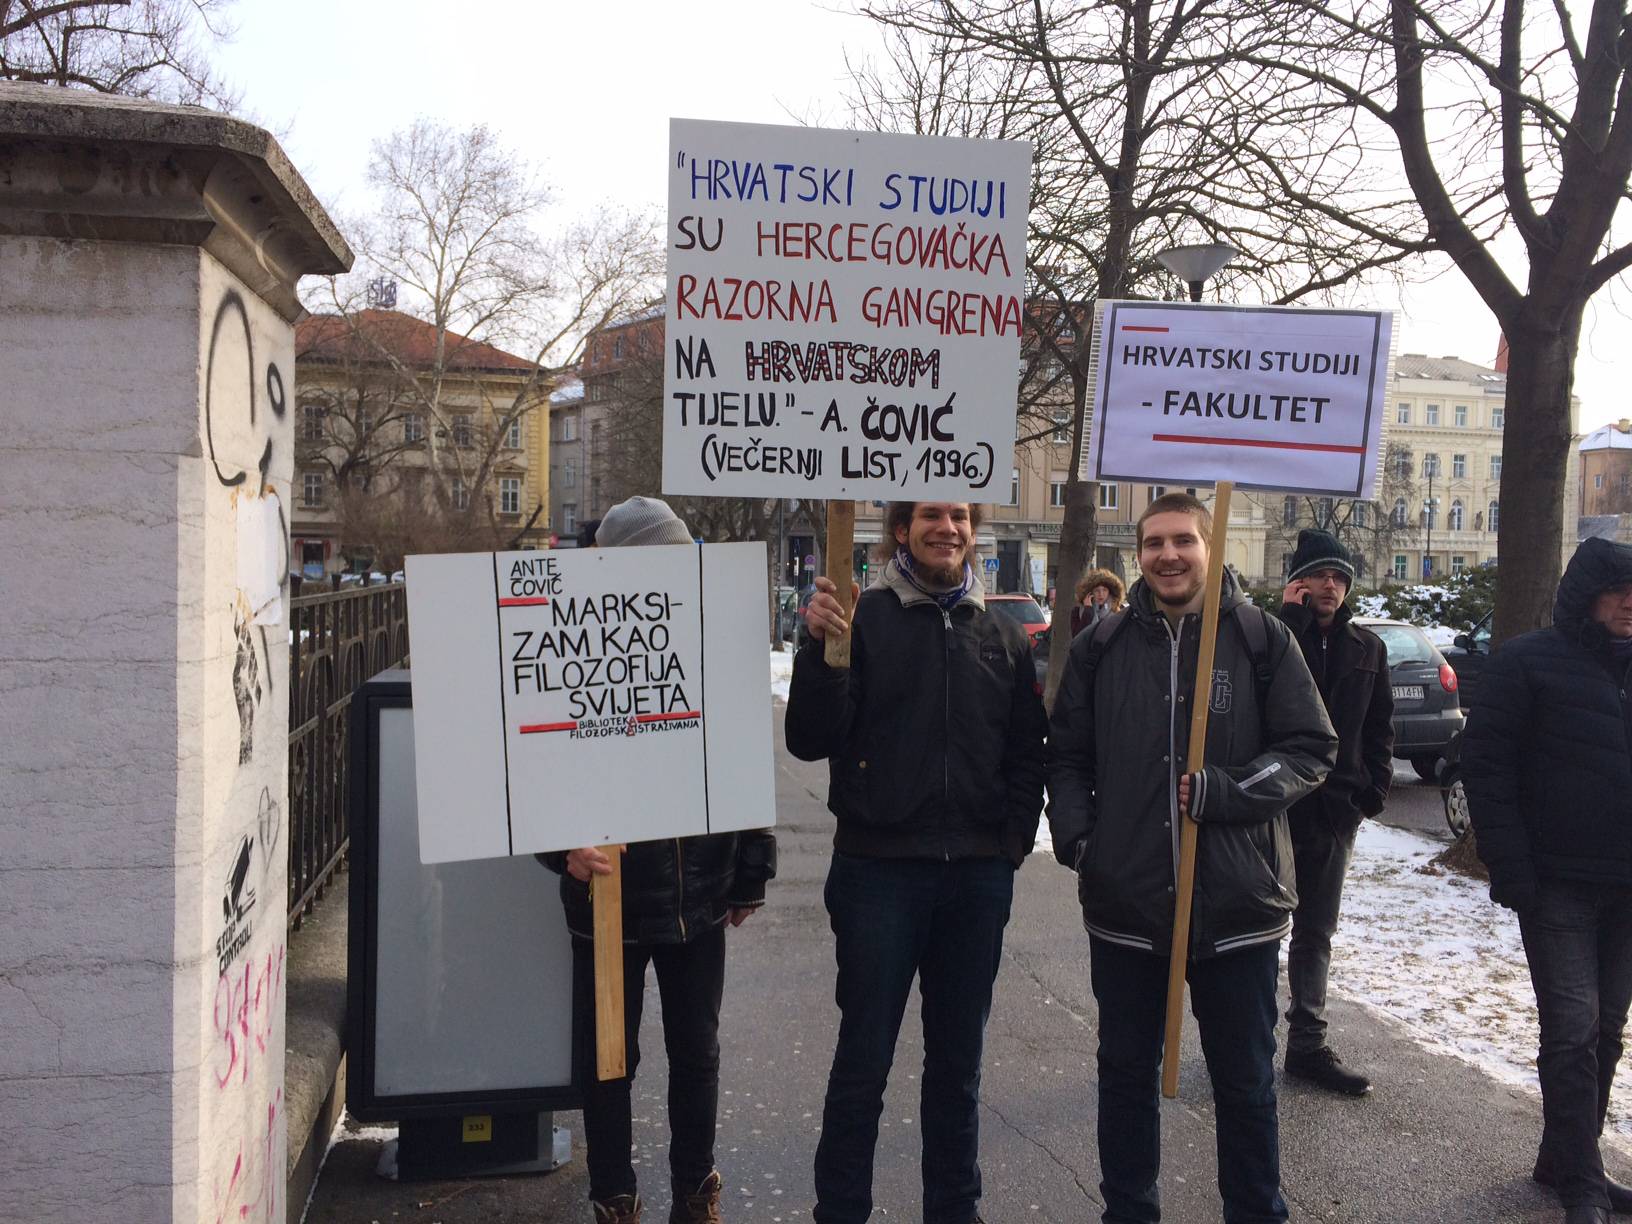 Hrvatski studiji umjesto faksa postaju odjel, studenti se bune